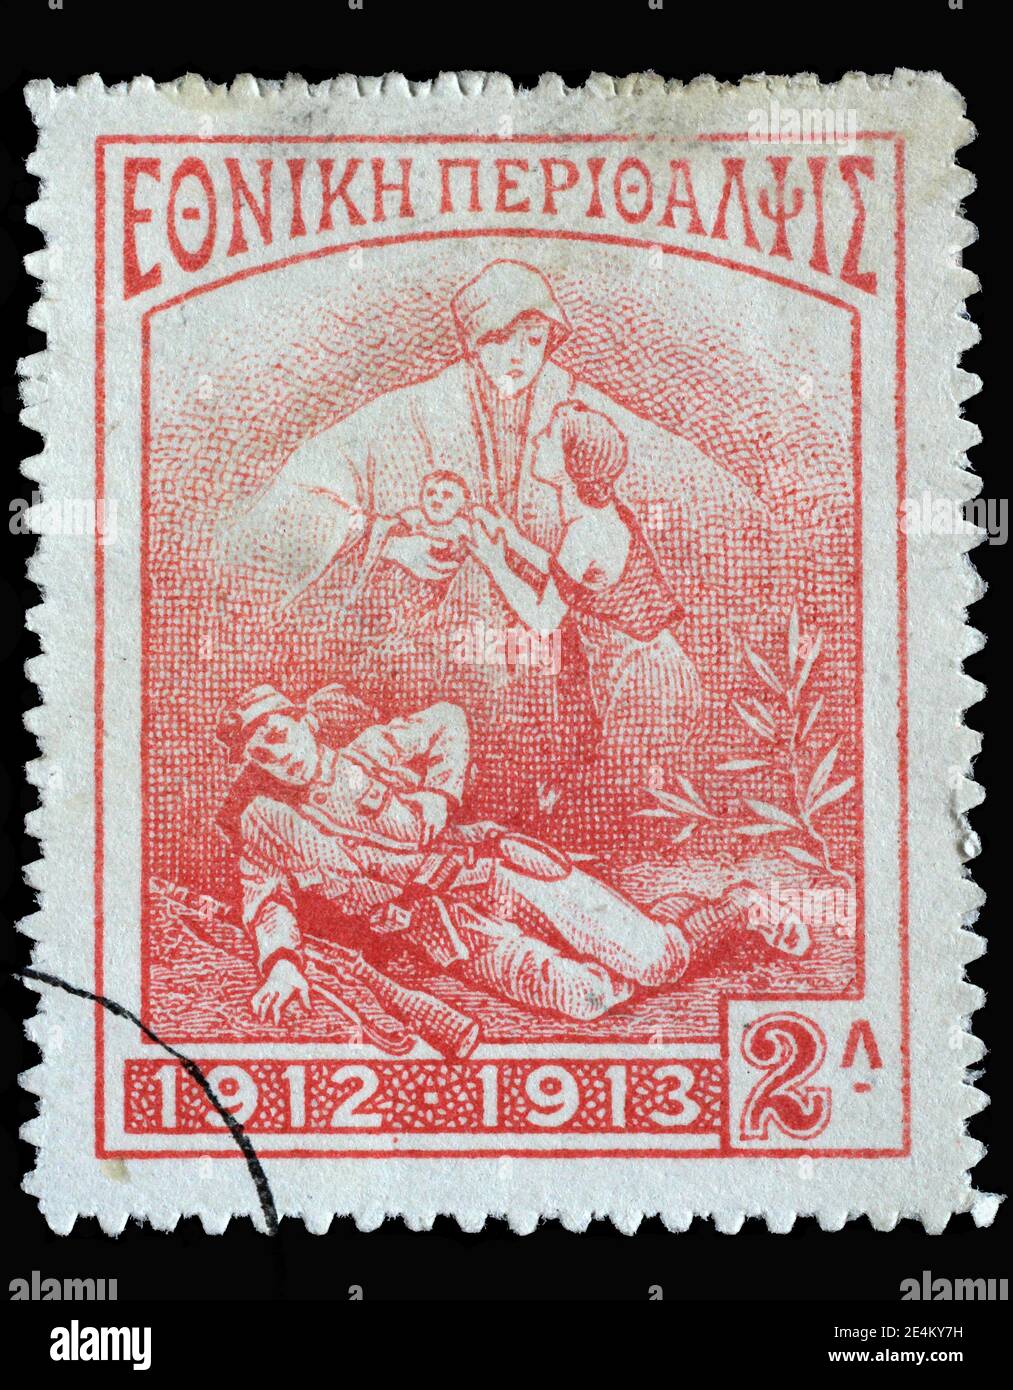 Stempel gedruckt in Griechenland zeigt sterbenden Soldaten, Witwe und Kind, um 1914 Stockfoto